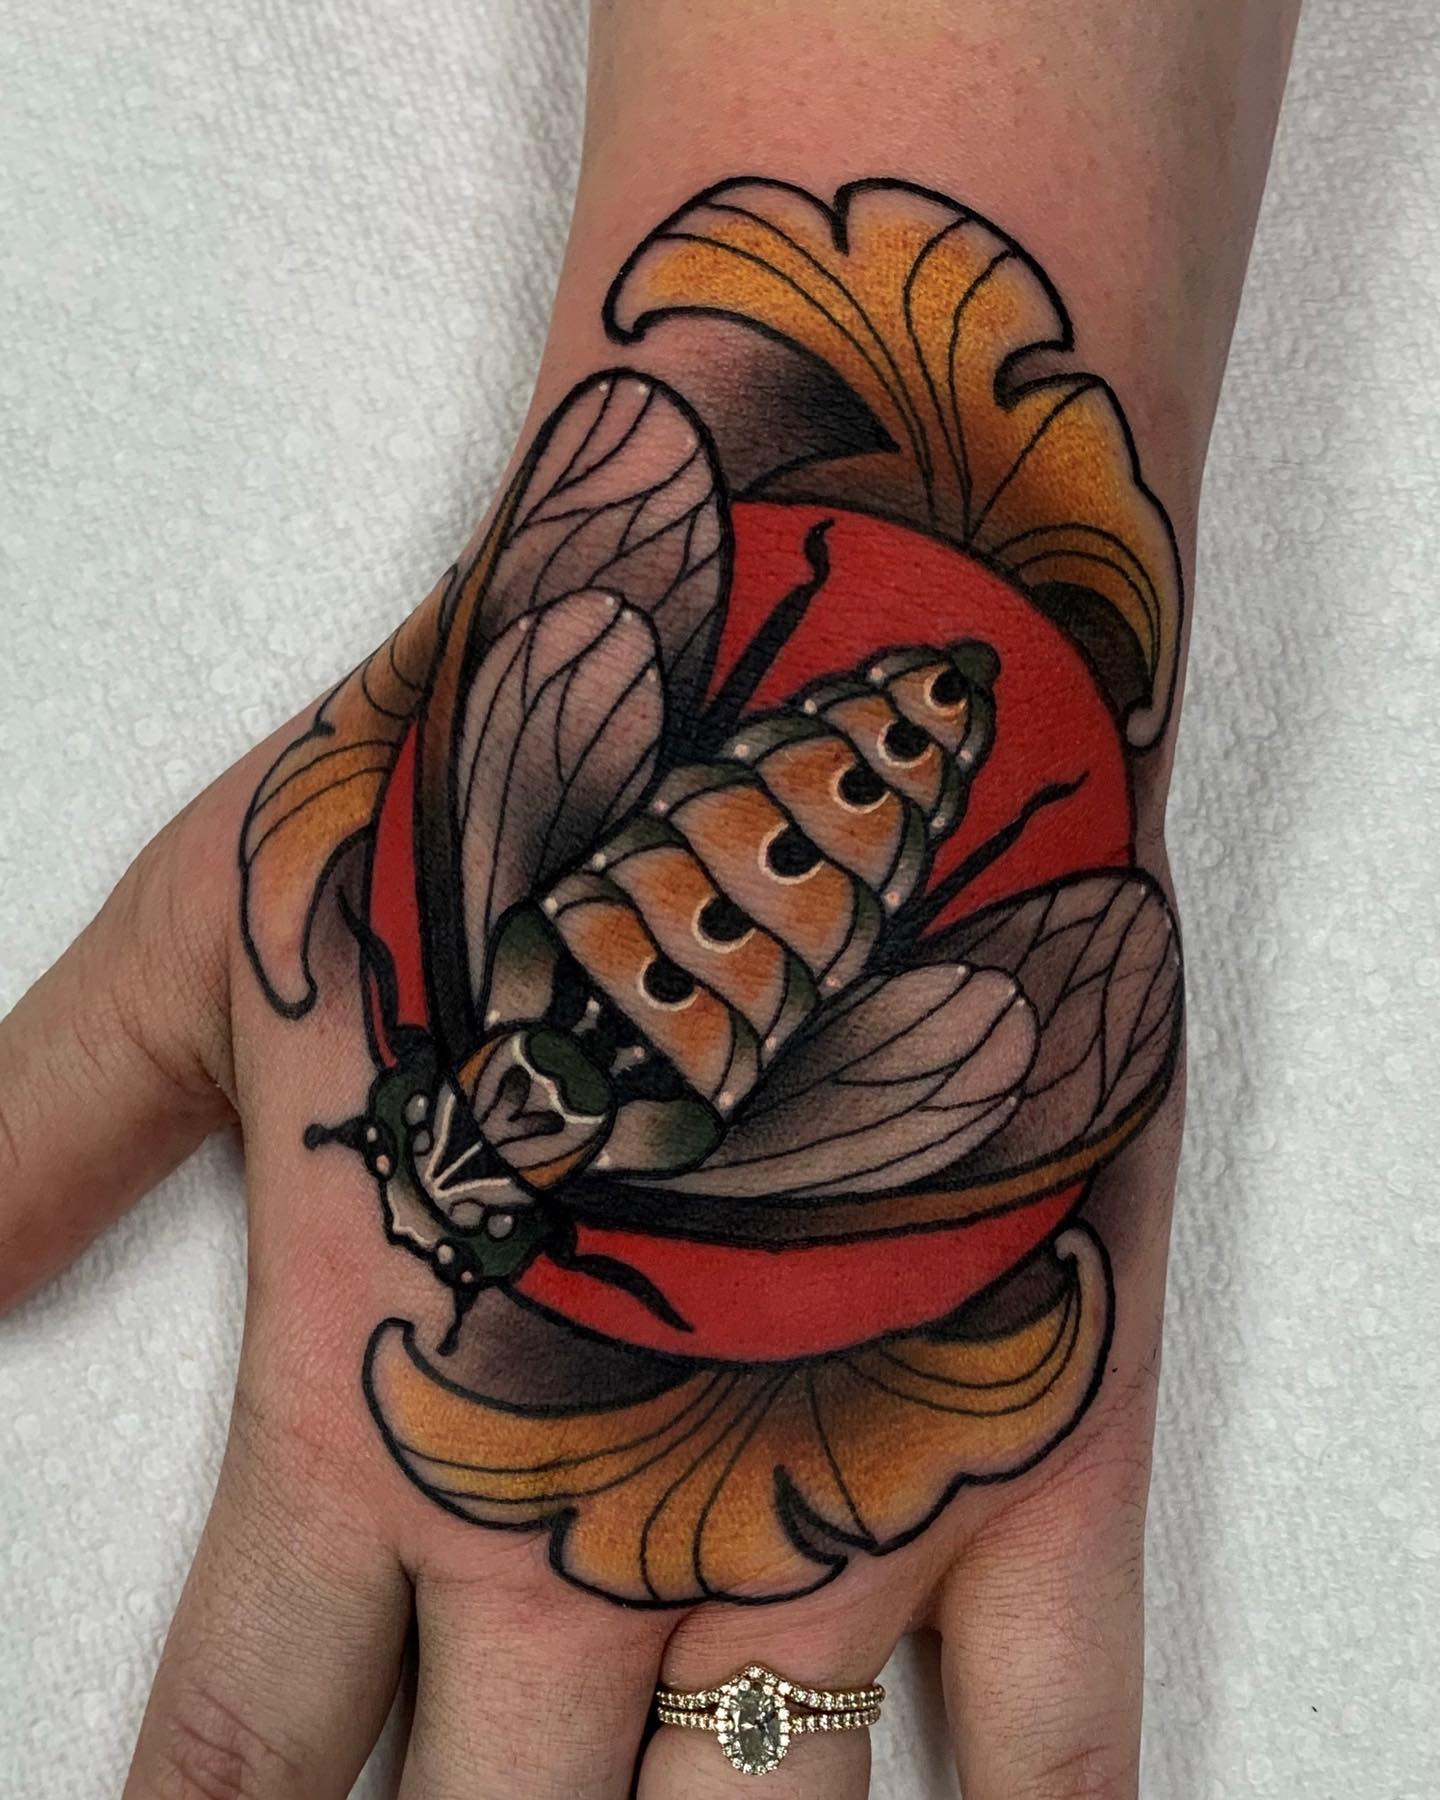 Tatuaje de insecto en la mano.